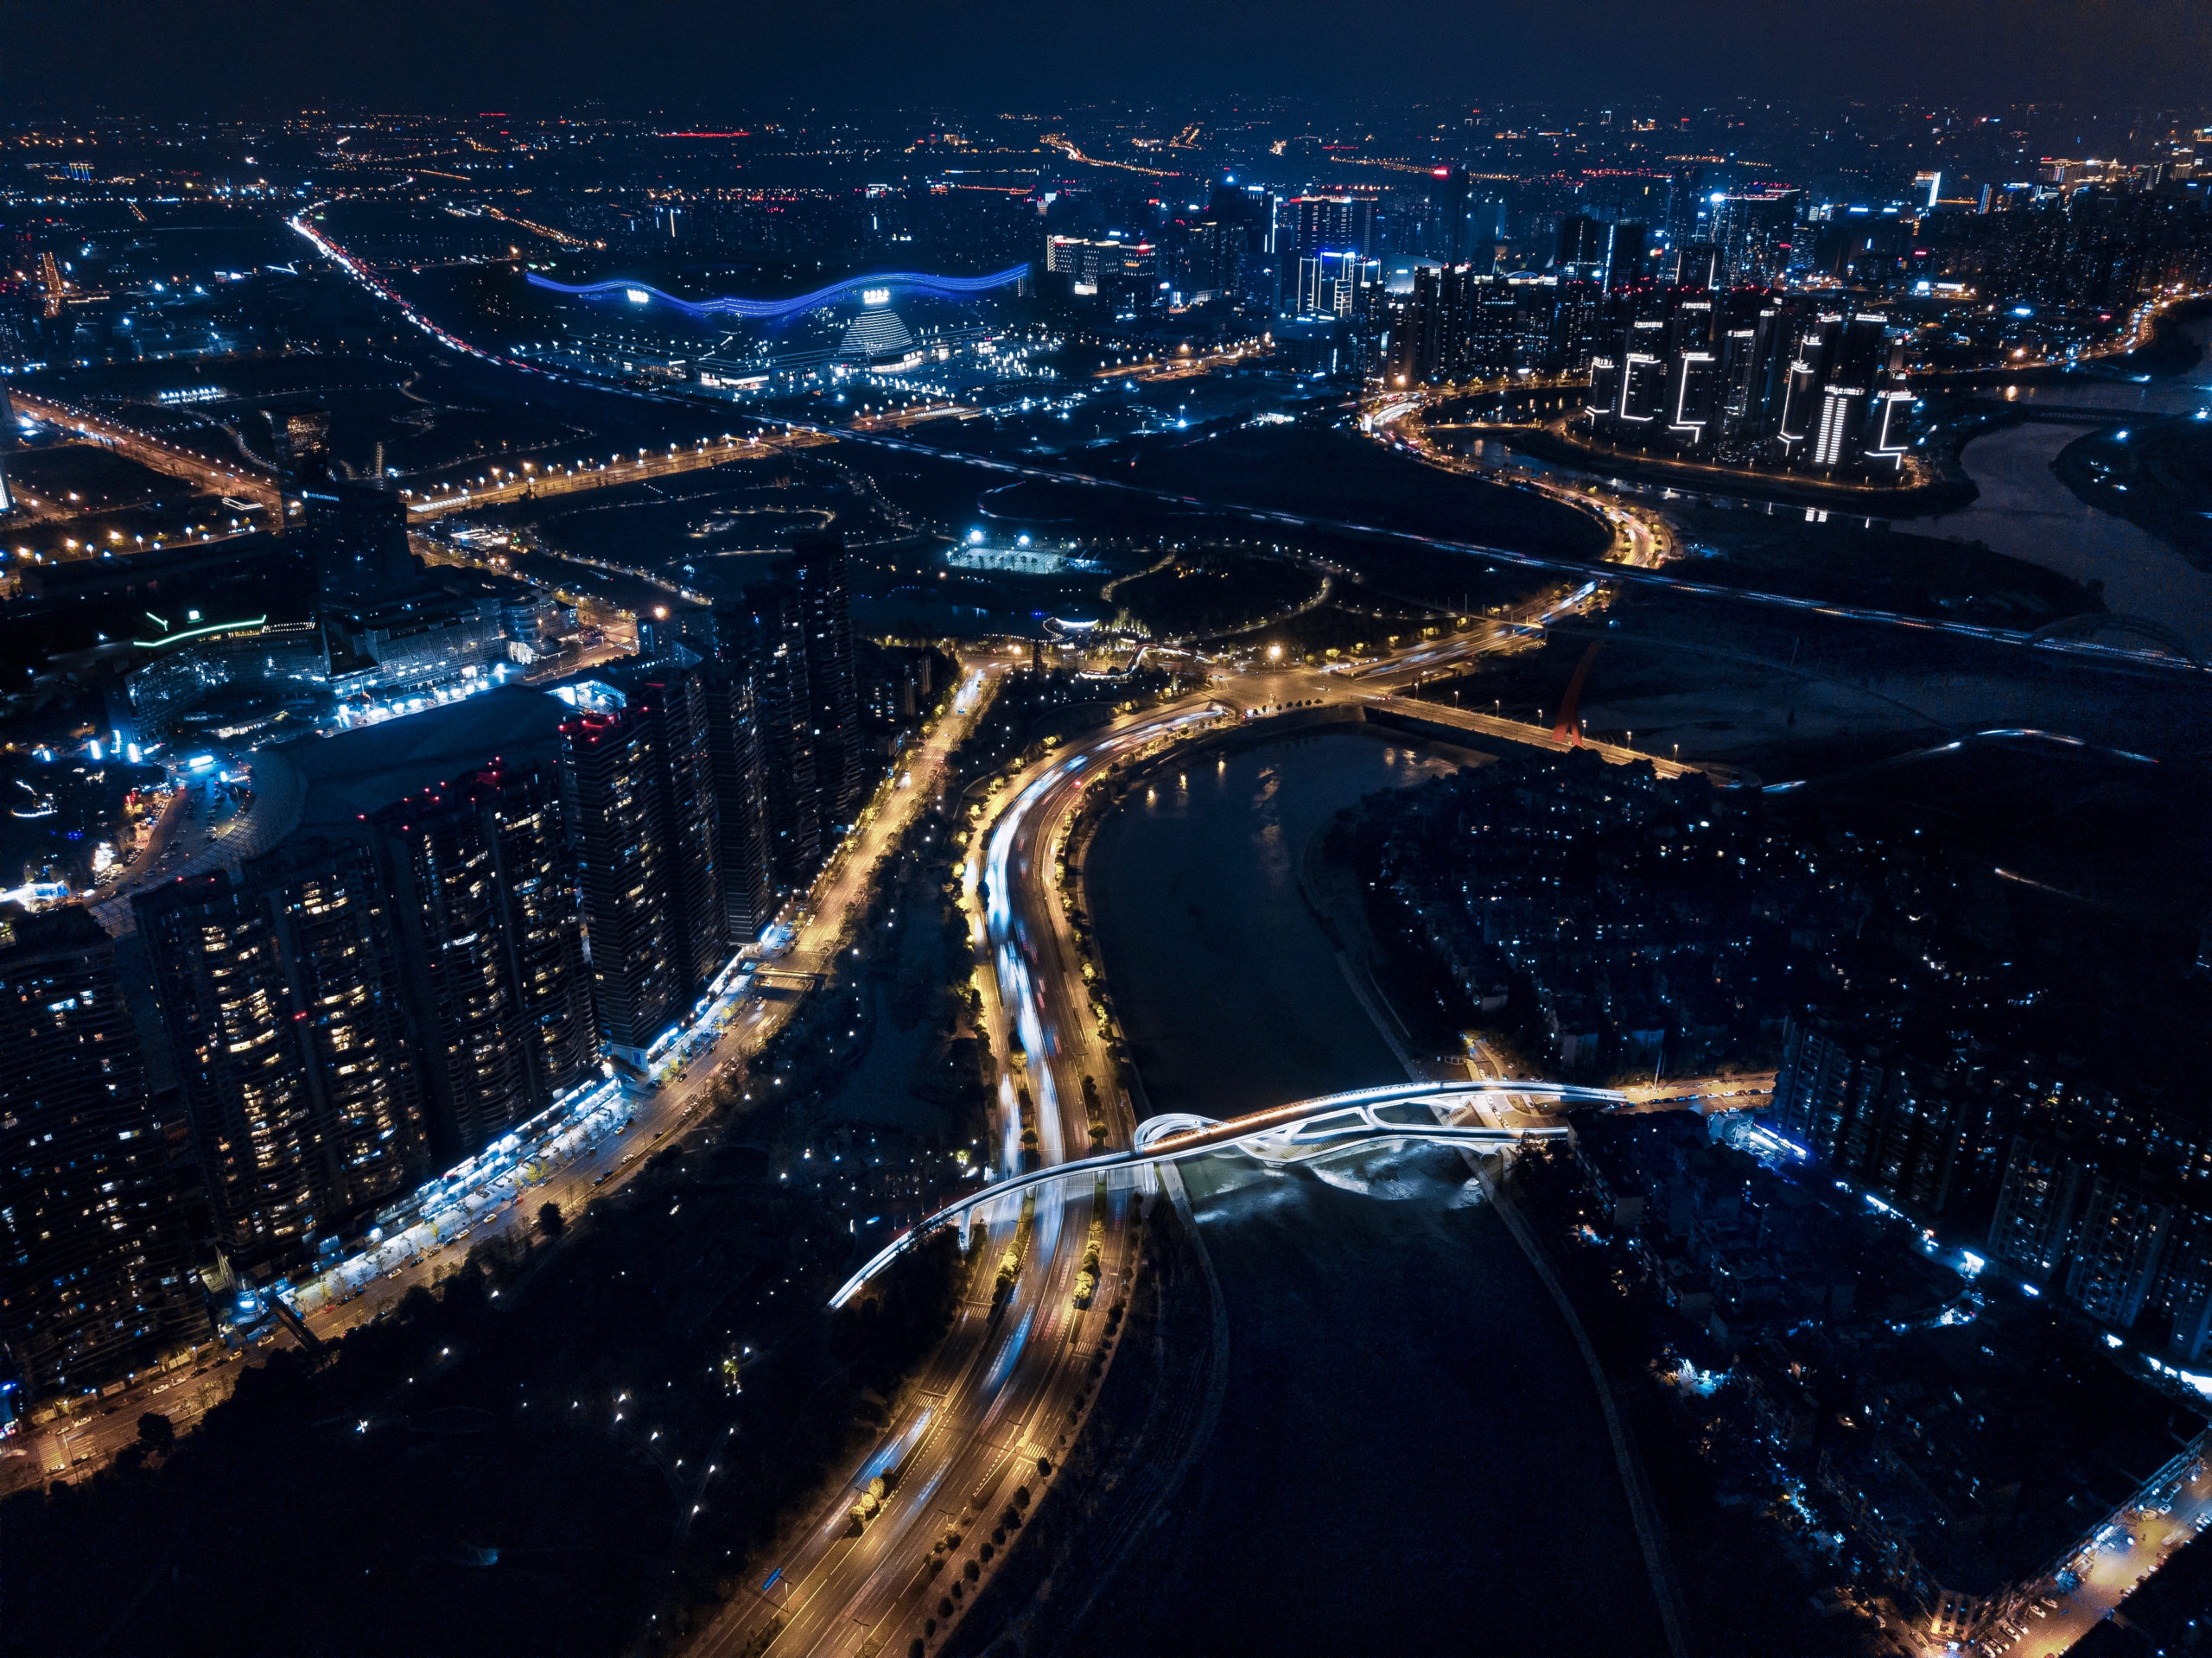 五岔子大橋 Wuchazi Bridge night bird view with city scape